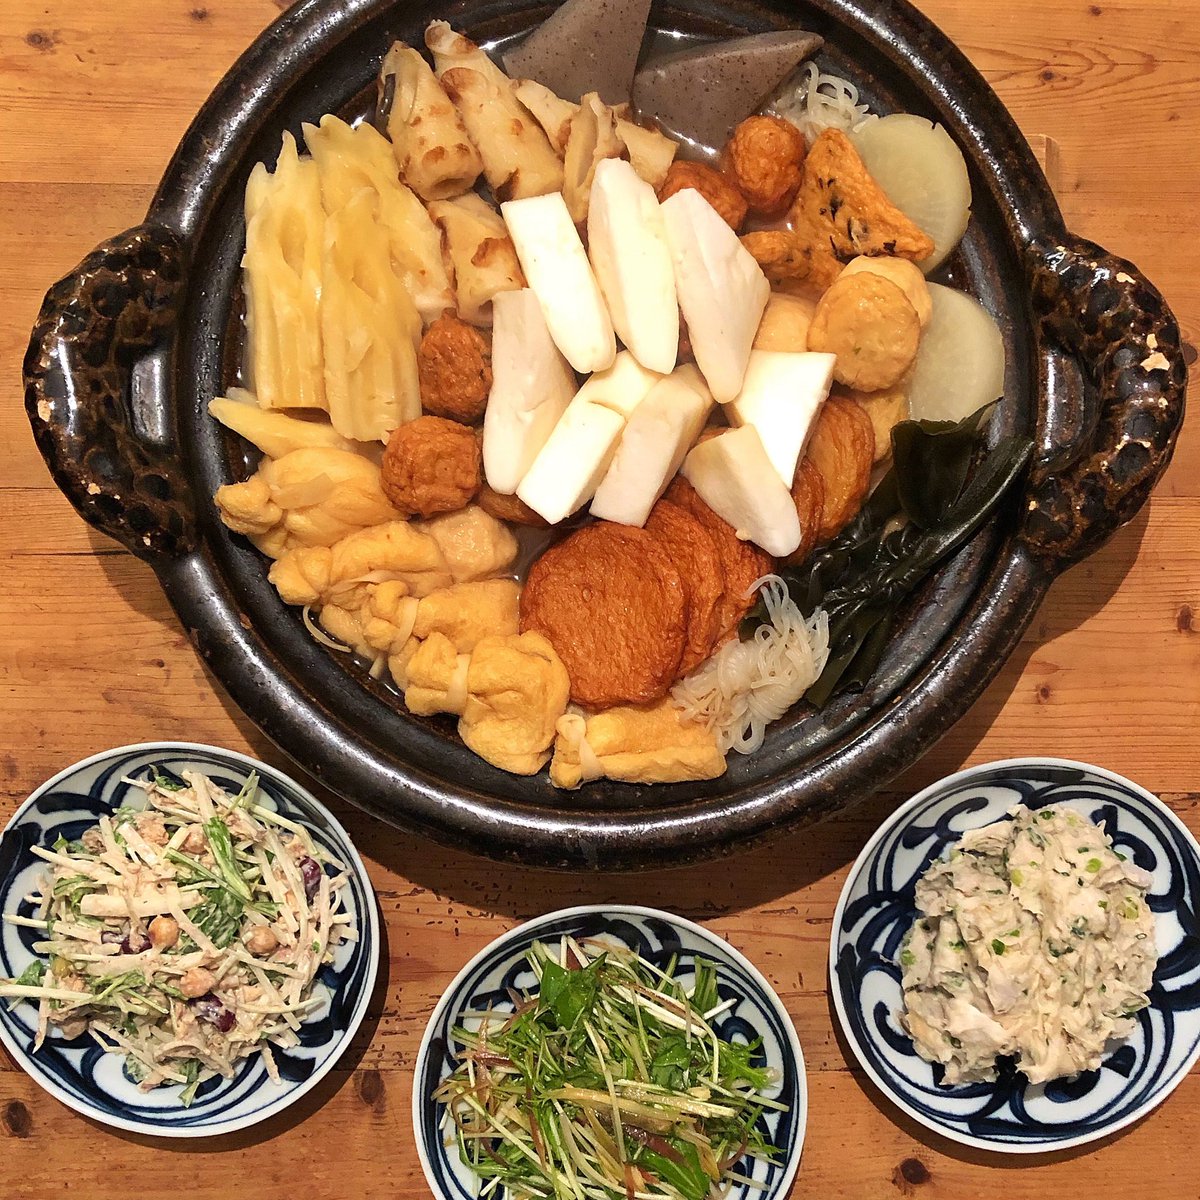 Takeshi Mochida Na Twitteru 今夜は子供達のリクエストで おでん 副菜は茗荷と水菜の和風サラダと里芋と塩昆布の和風ポテト サラダとさばの水煮と大根の水菜のサラダ 父料理